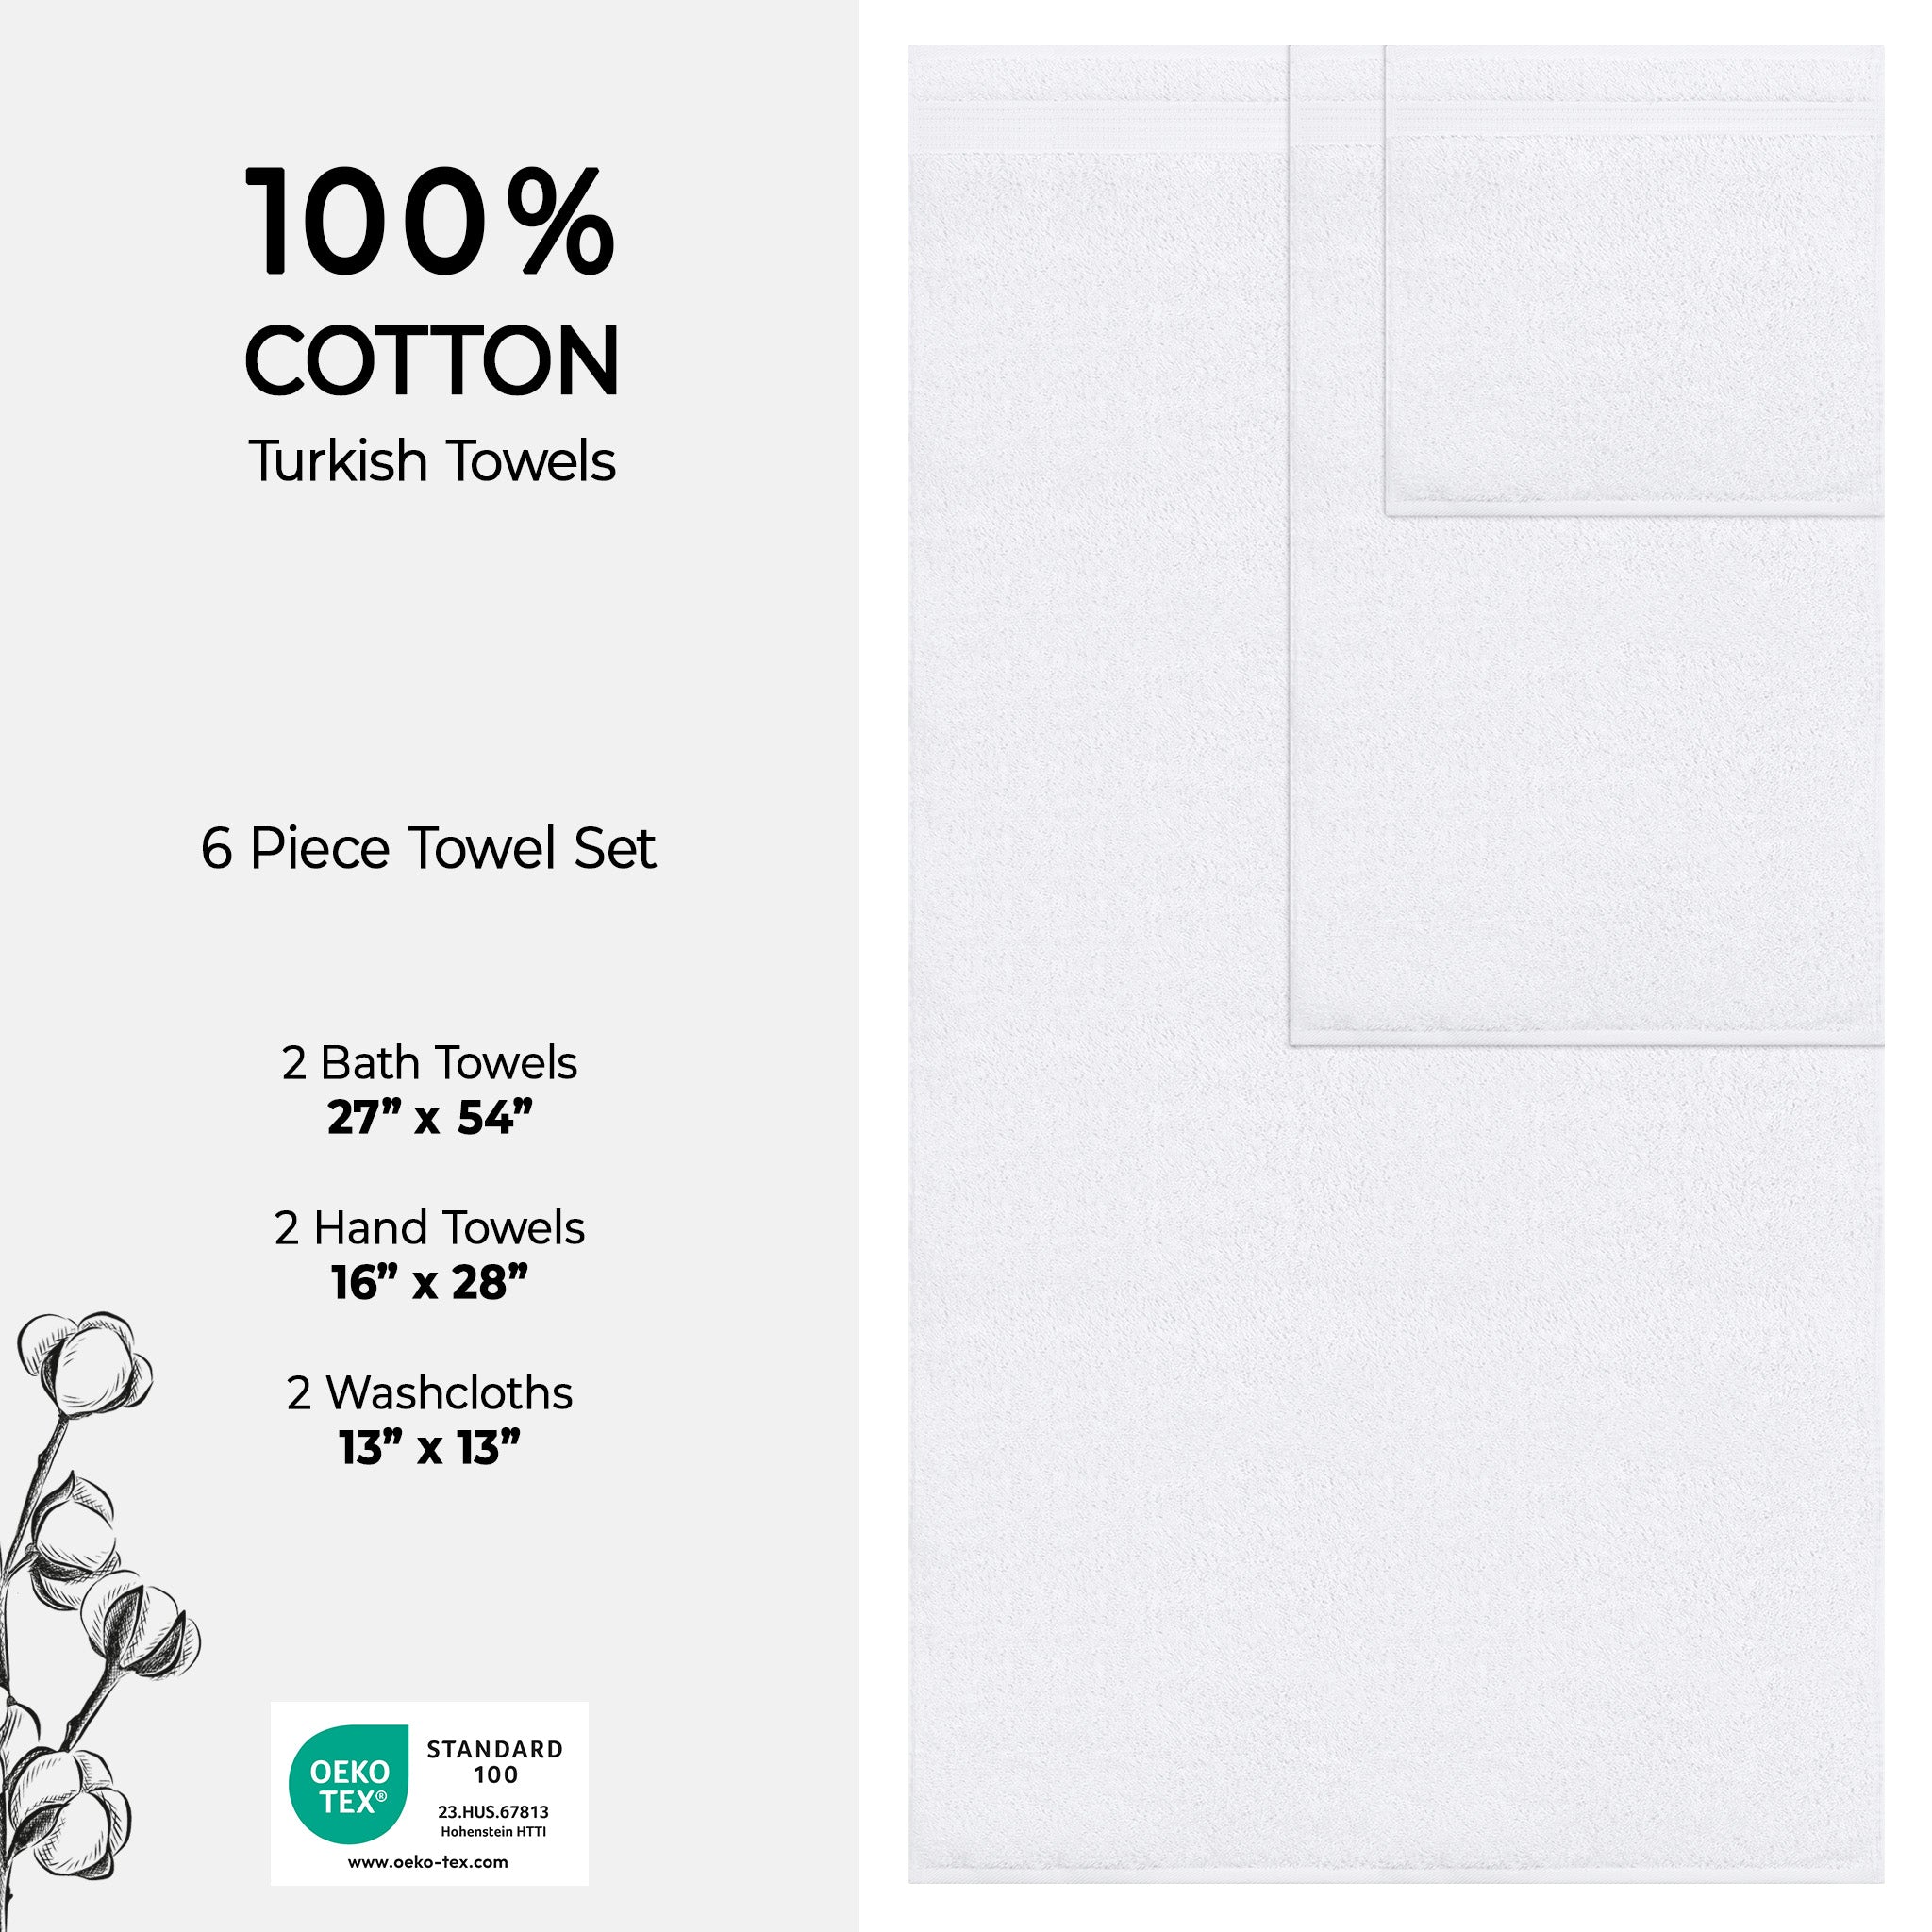 American Soft Linen Bekos 100% Cotton Turkish Towels 6 Piece Bath Towel Set -white-04